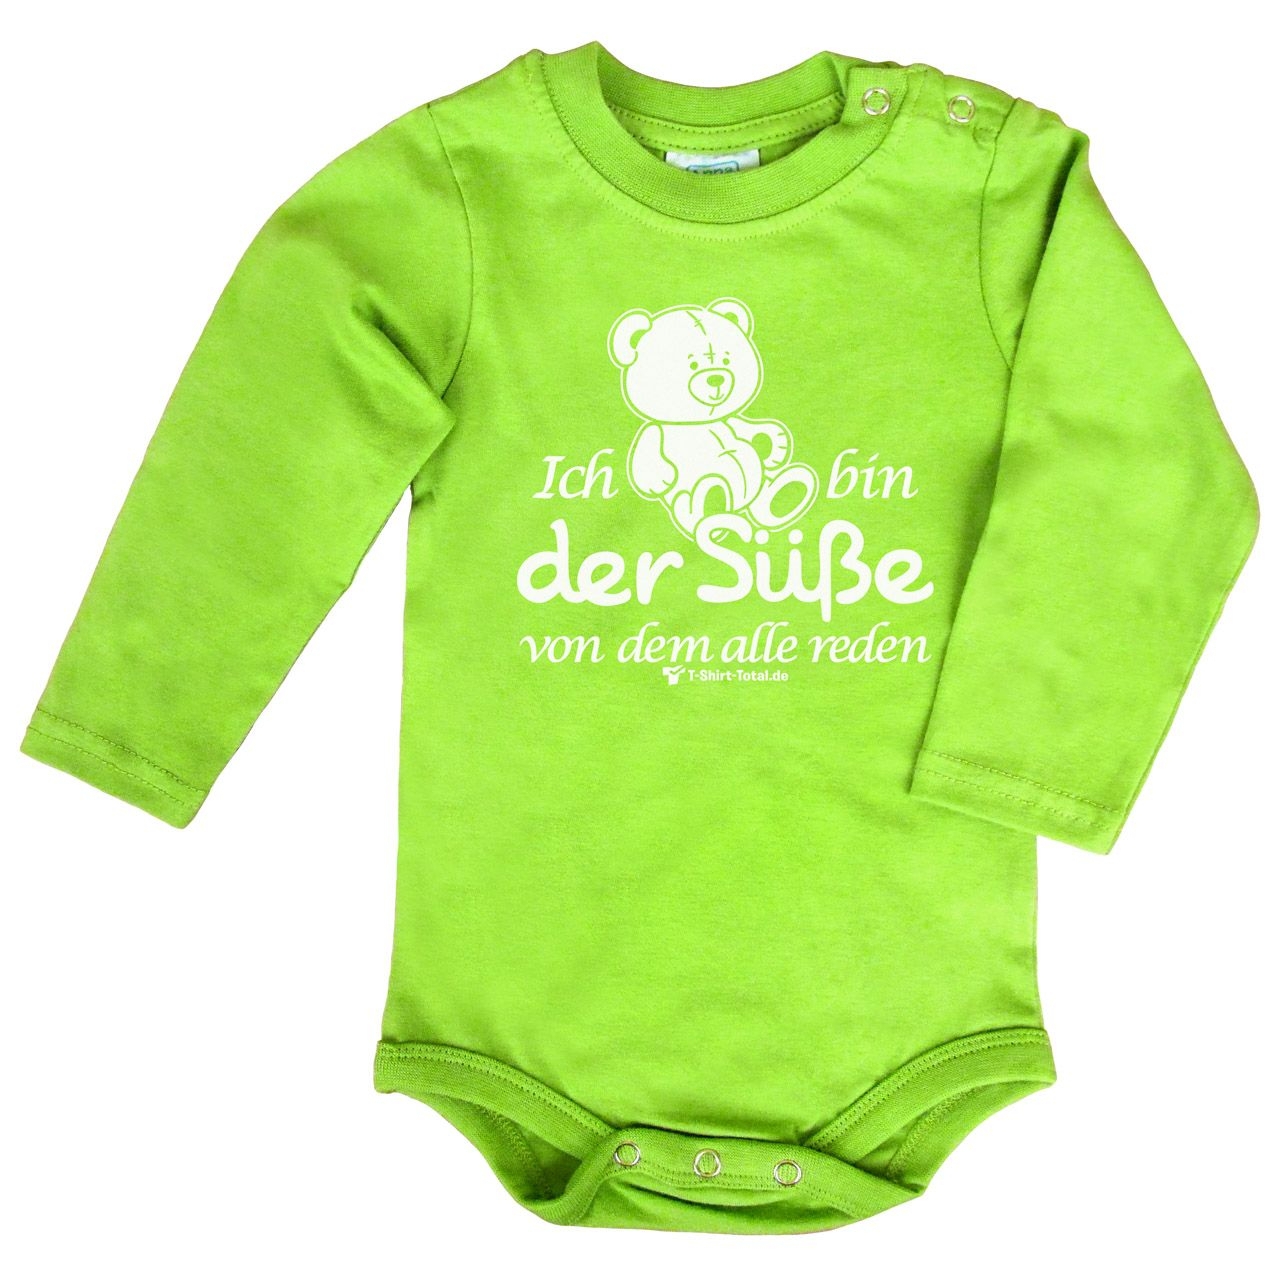 Der Süße Baby Body Langarm hellgrün 68 / 74